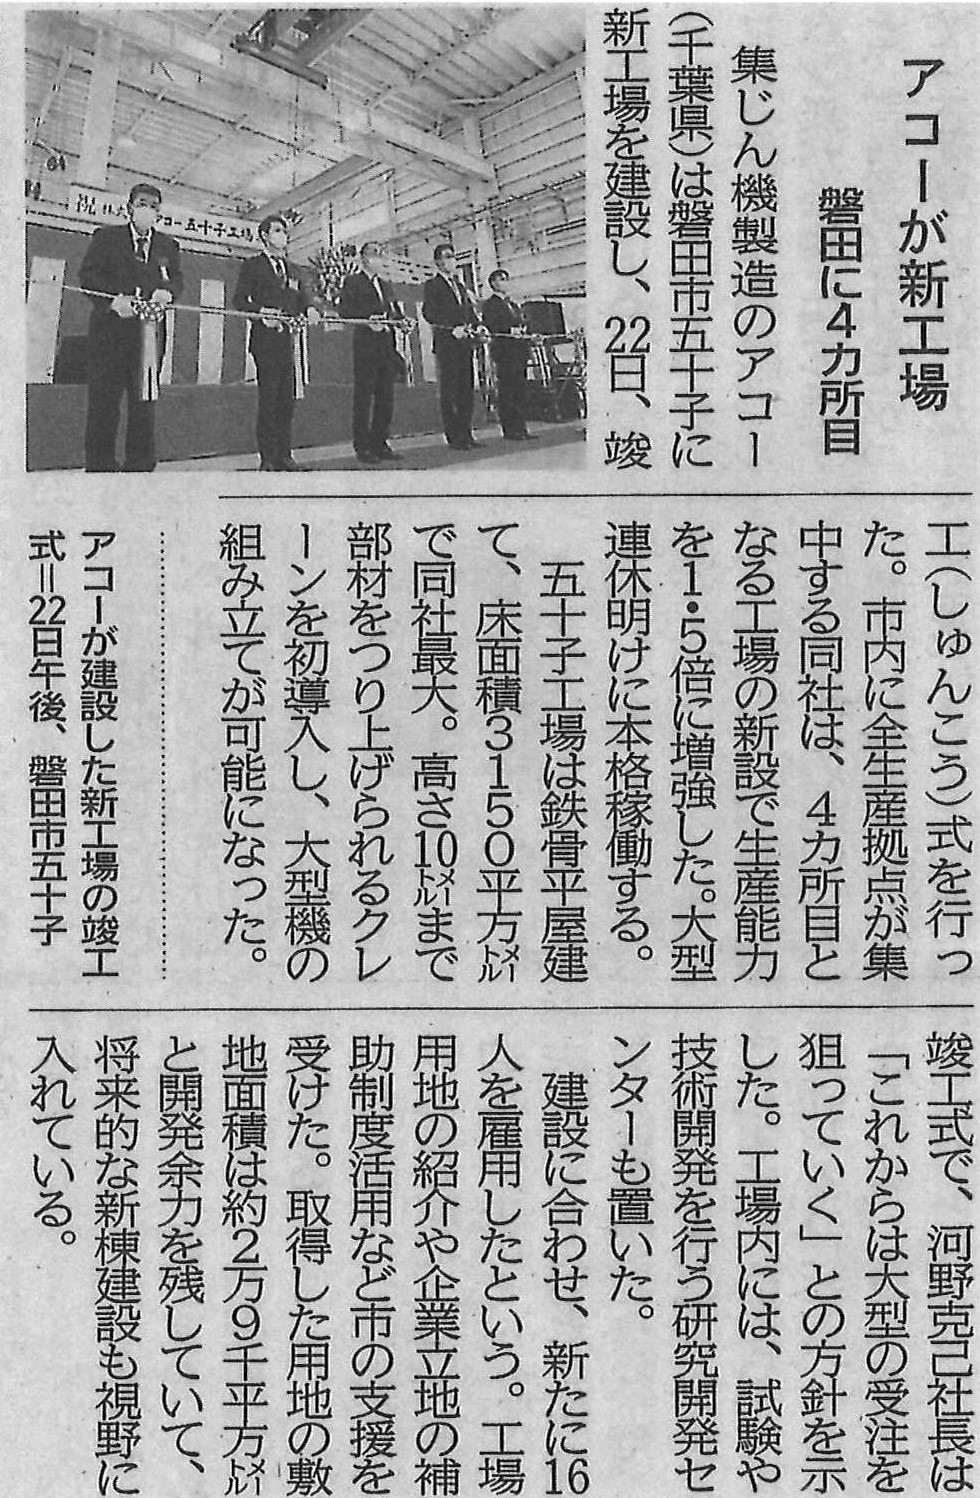 株式会社アコー様五十子工場竣工式が静岡新聞に掲載されました。